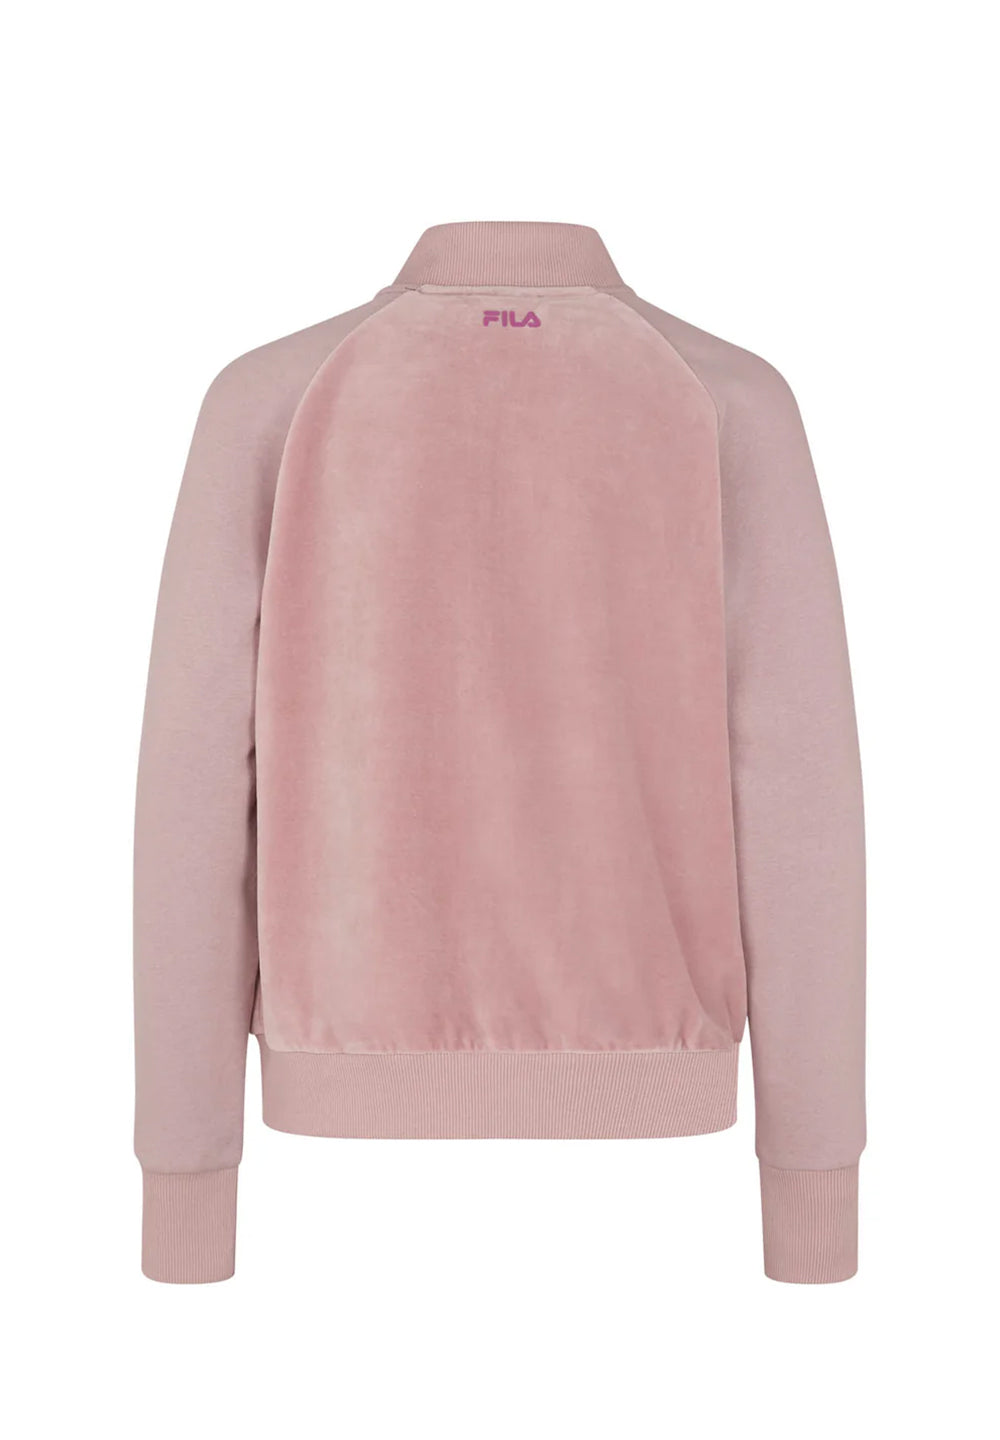 Pink zip sweatshirt for girls